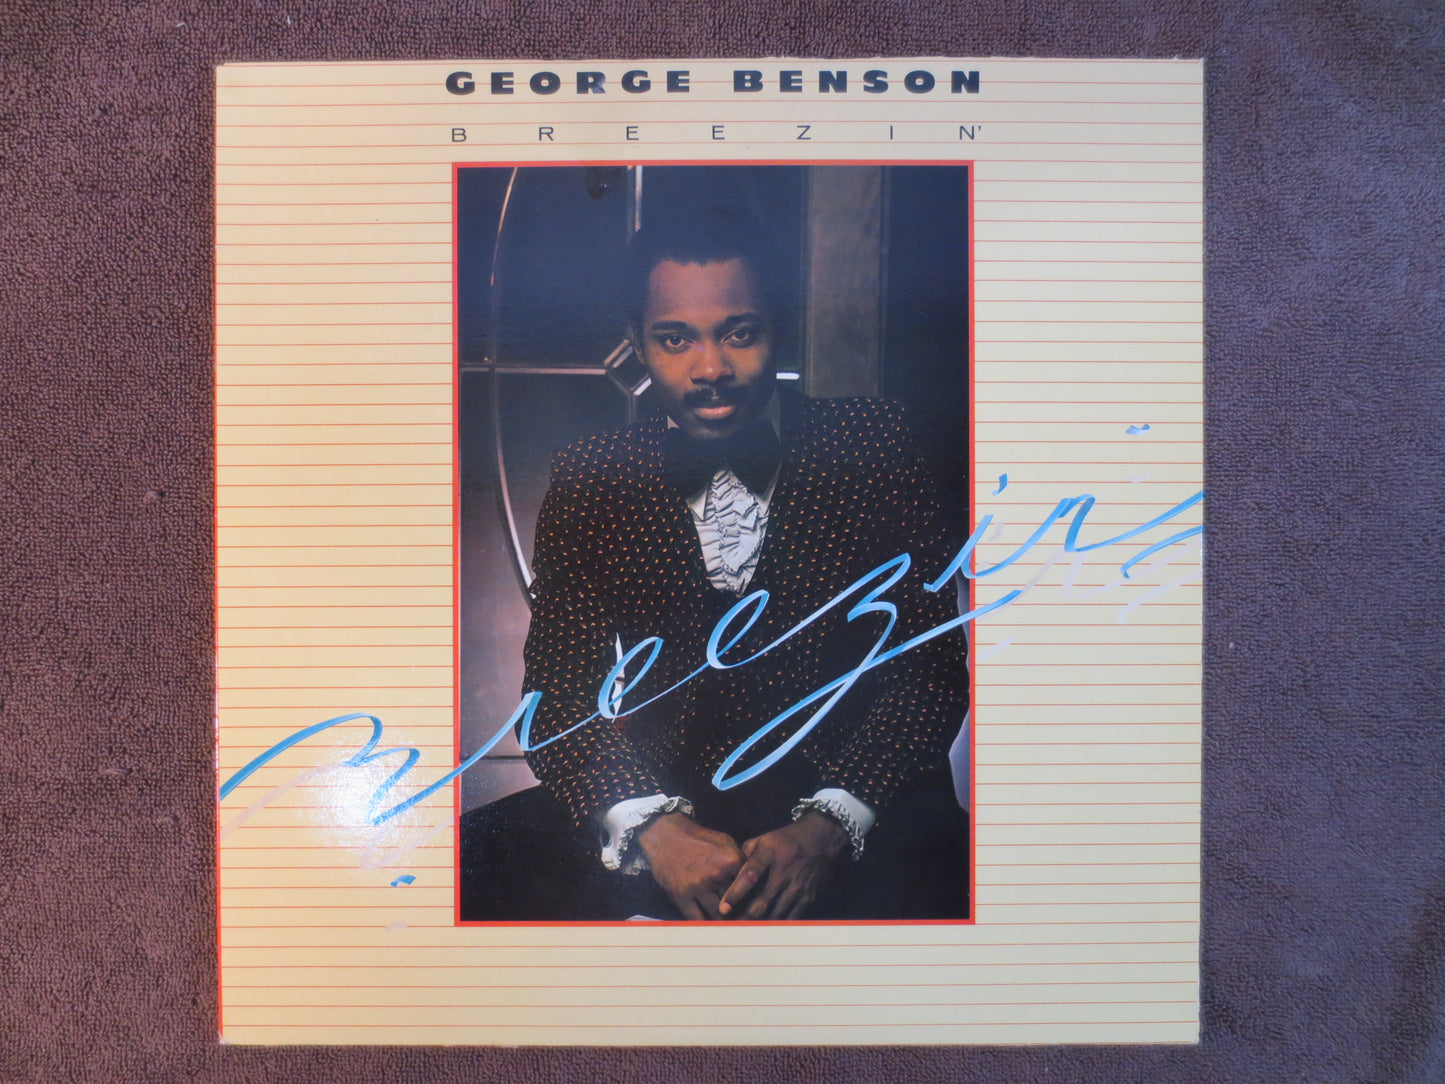 GEORGE BENSON, BREEZIN', George Benson Record, George Benson Album, George Benson Lp, Jazz Record, Jazz Vinyl, 1976 Records